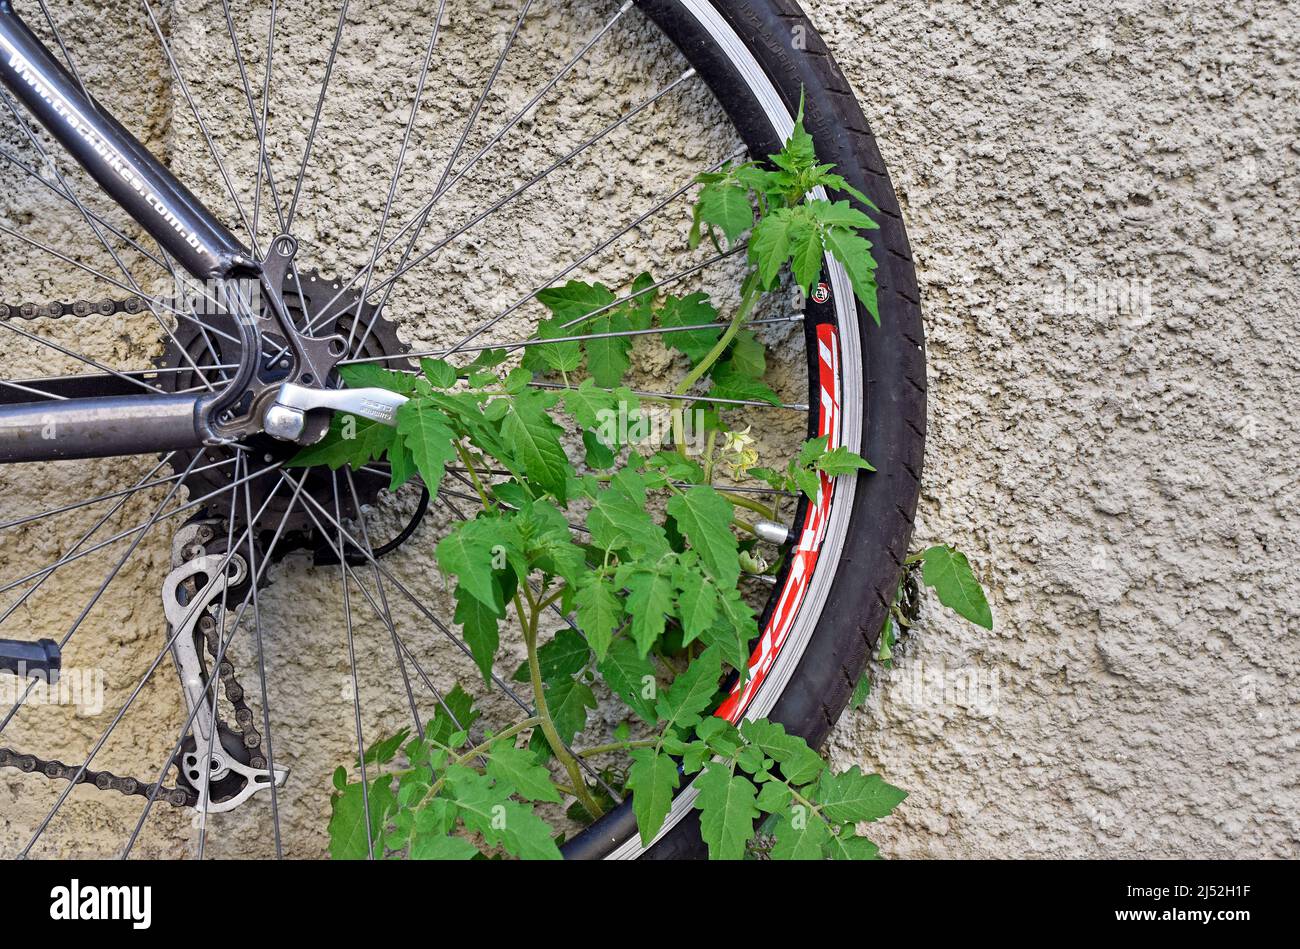 RIO DE JANEIRO, BRASILIEN - 22. OKTOBER 2021: Tomatenpflanze wächst mit Hilfe eines Fahrradrades Stockfoto